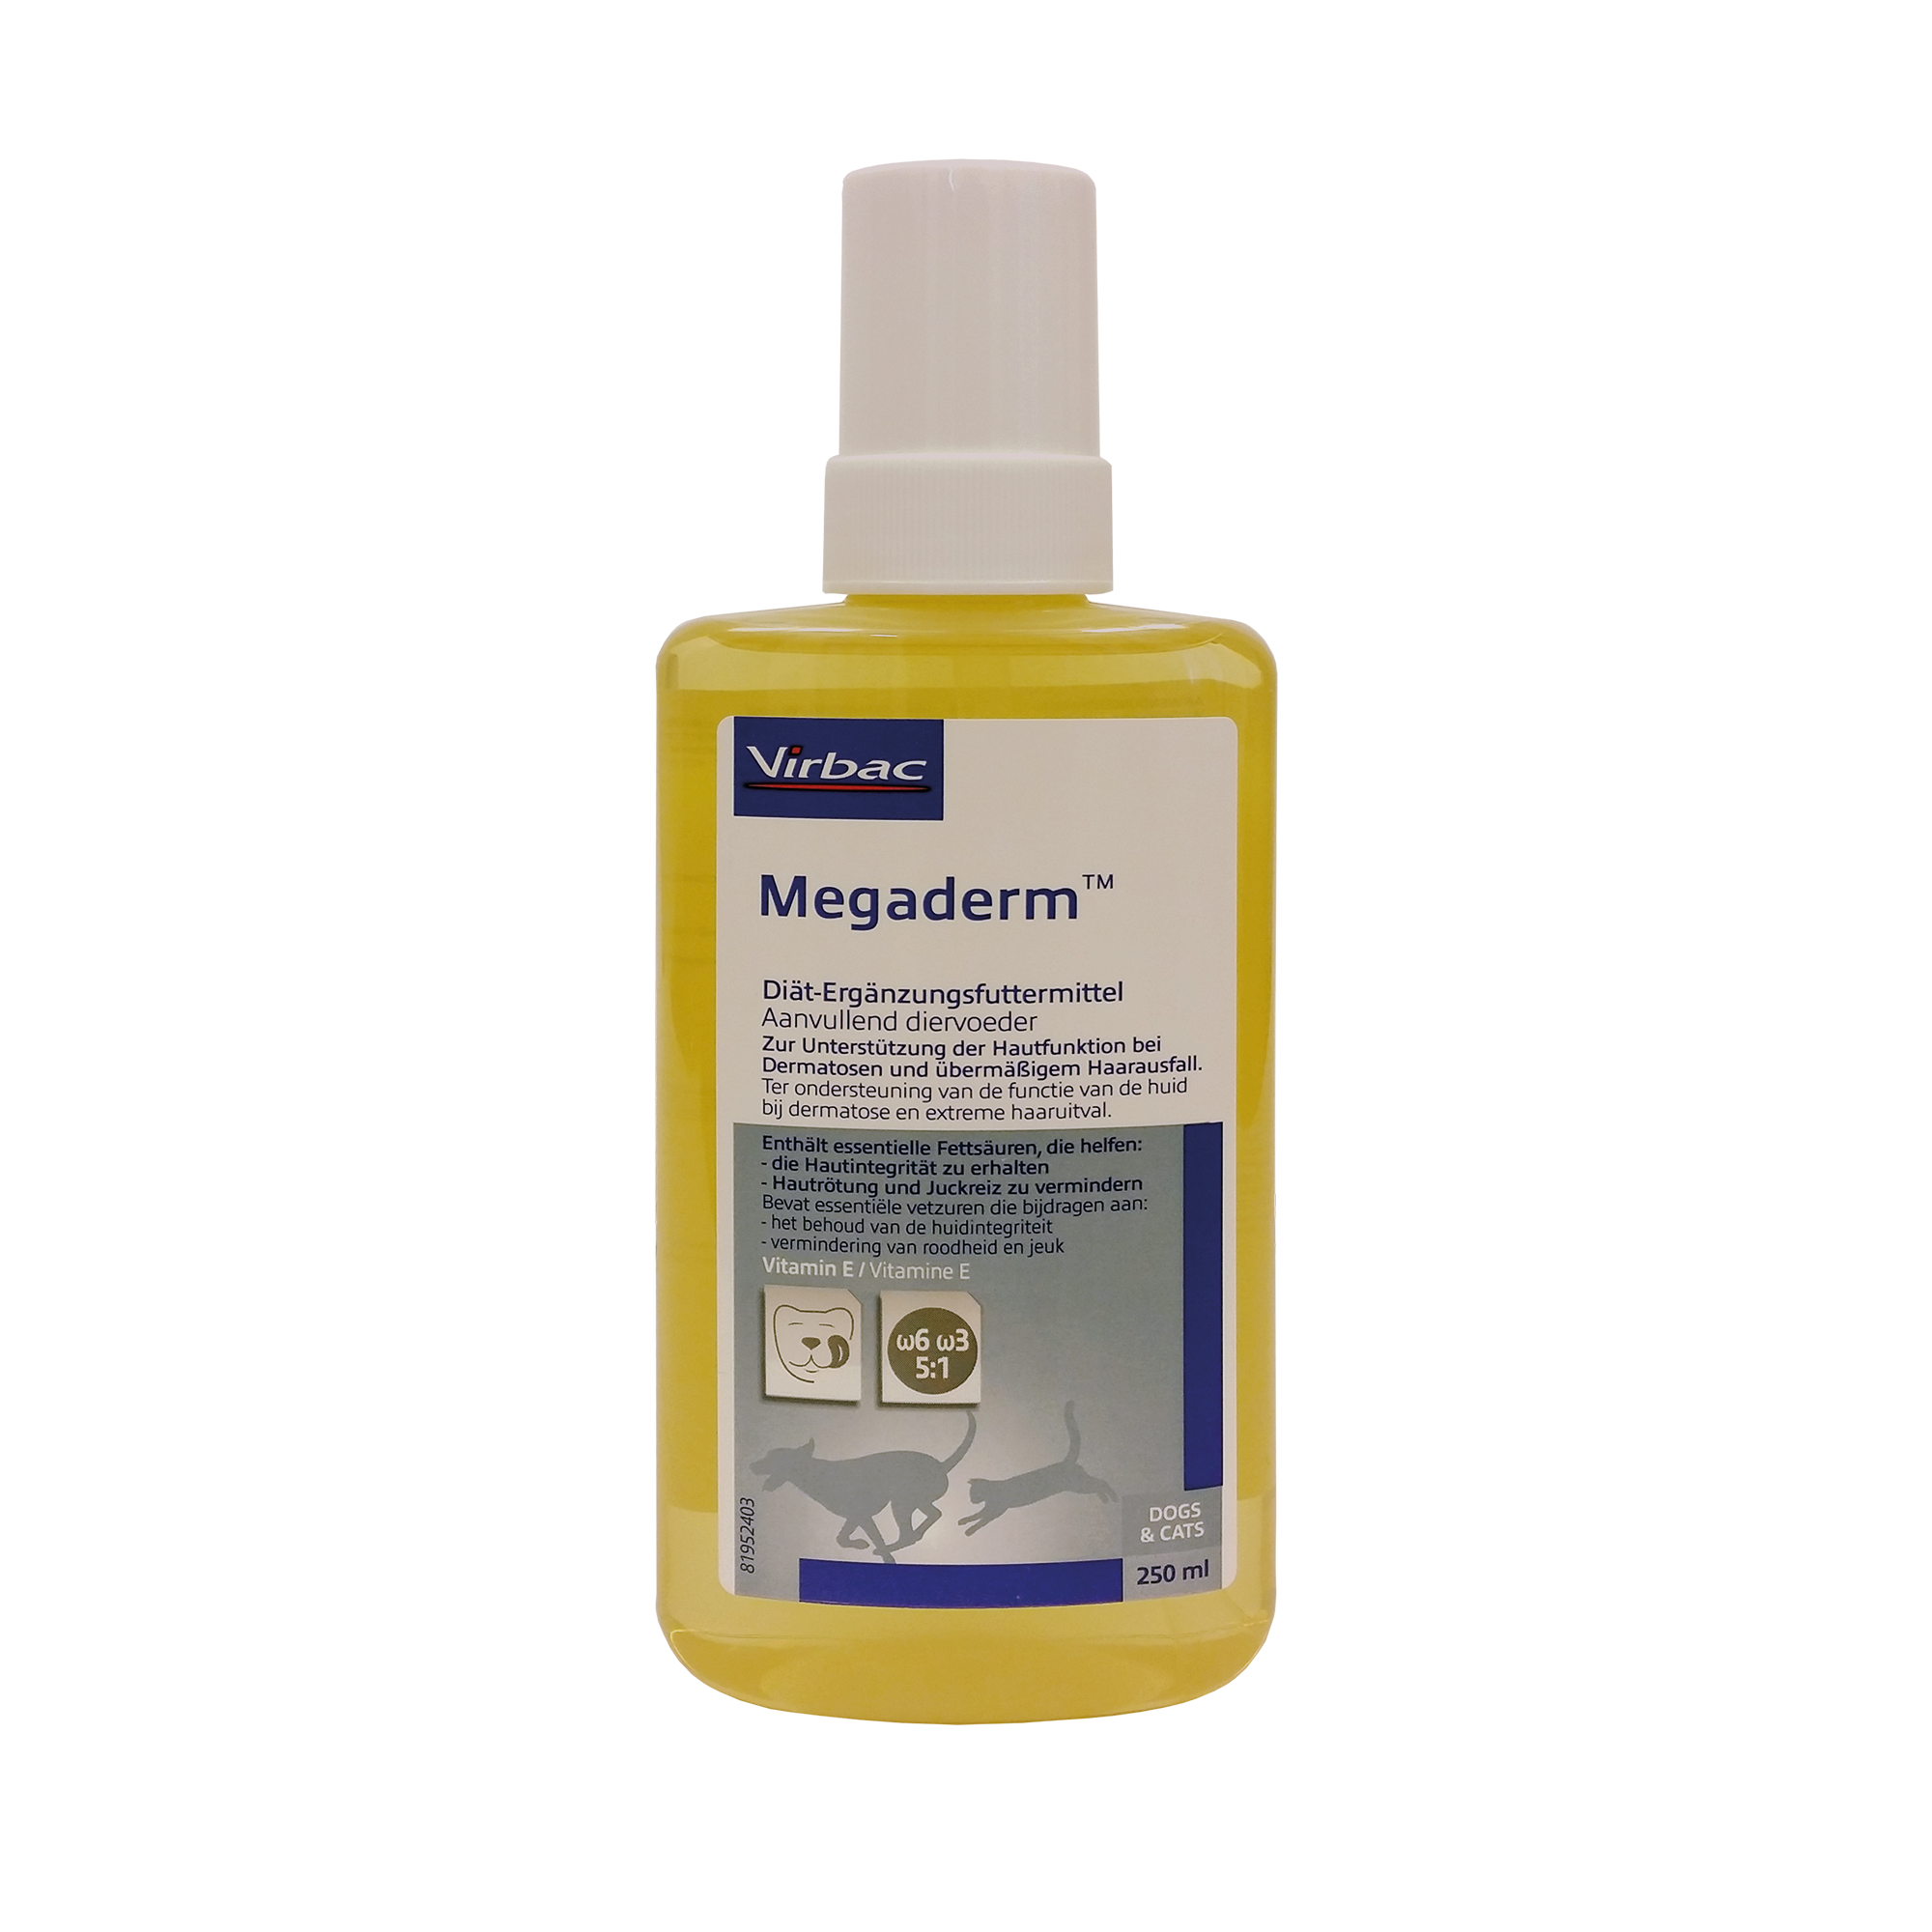 Megaderm - Diät-Ergänzungsmittel für Hunde und Katzen